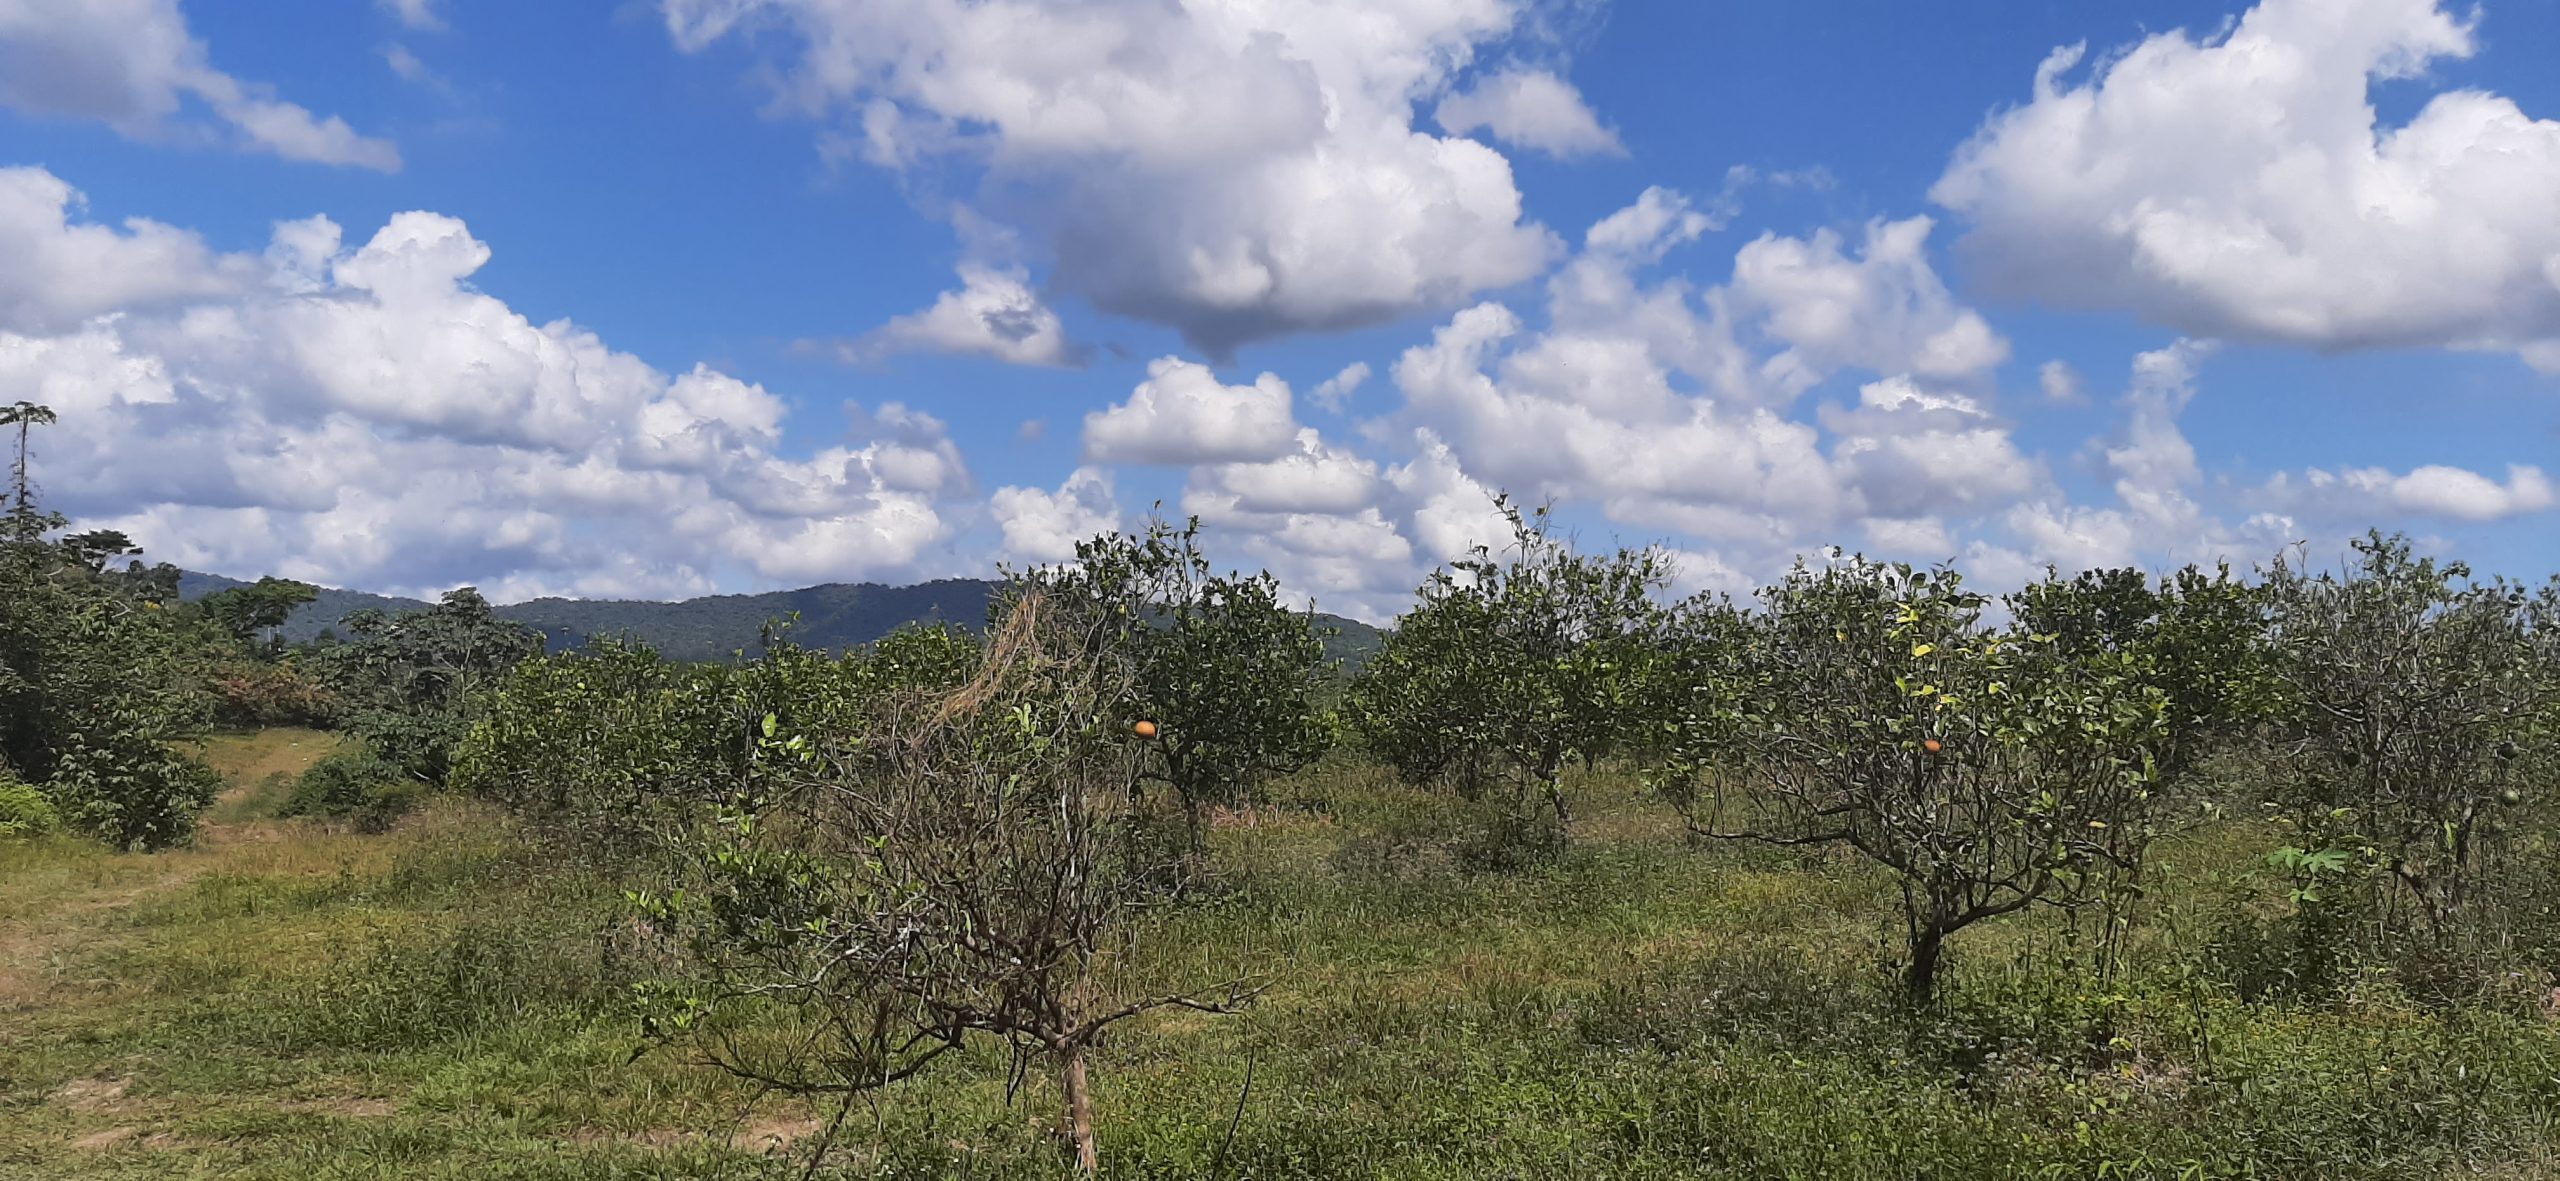 SCL02-Belize Citrus Farm for Sale- 135 acres of Citrus near the Bocawina reserve